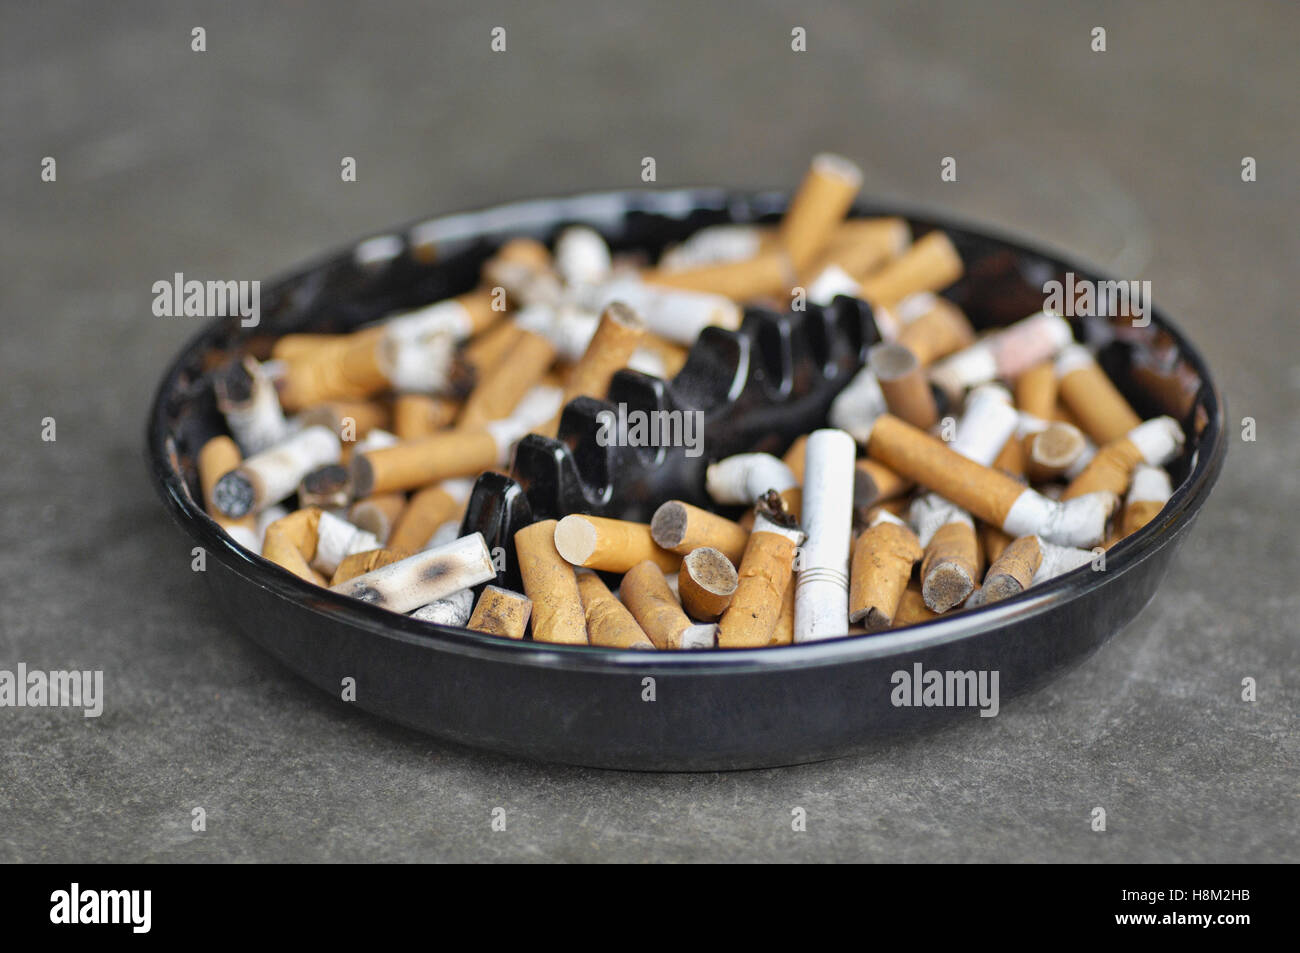 Posacenere completo di sigarette sul tavolo, close-up Foto Stock